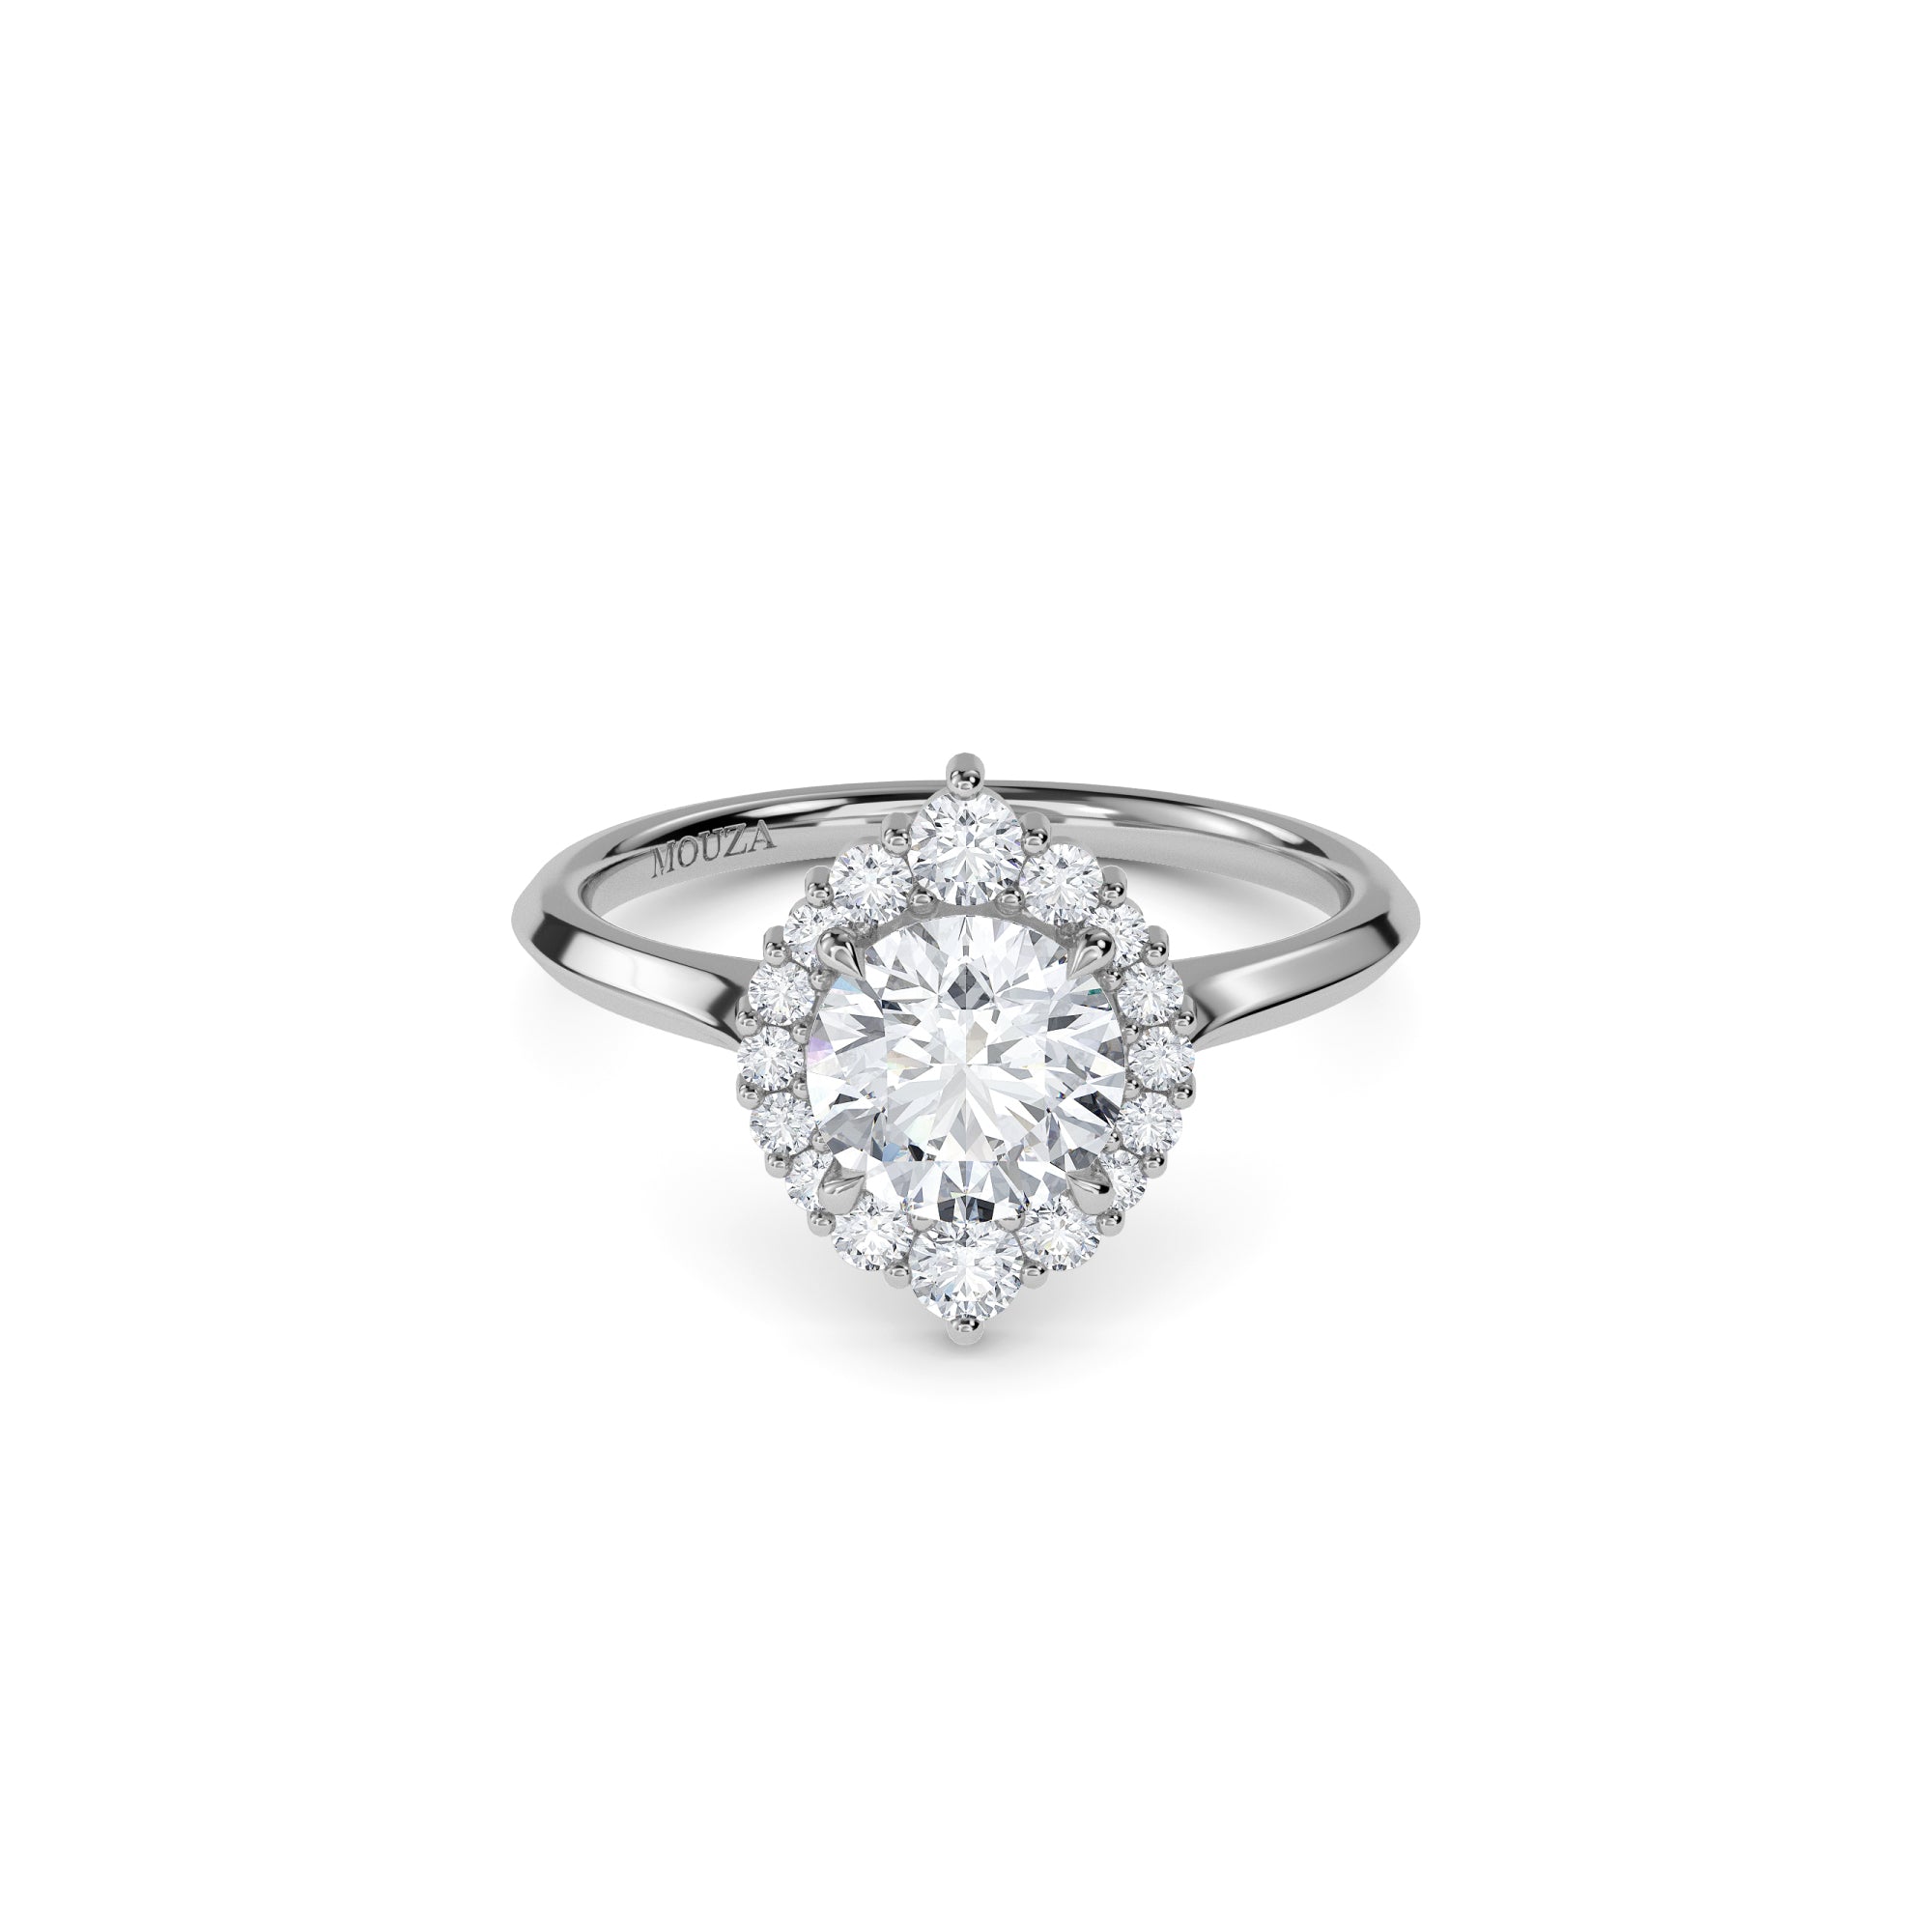 1 carat Natural Round Diamond - Hatton Garden Engagement Ring